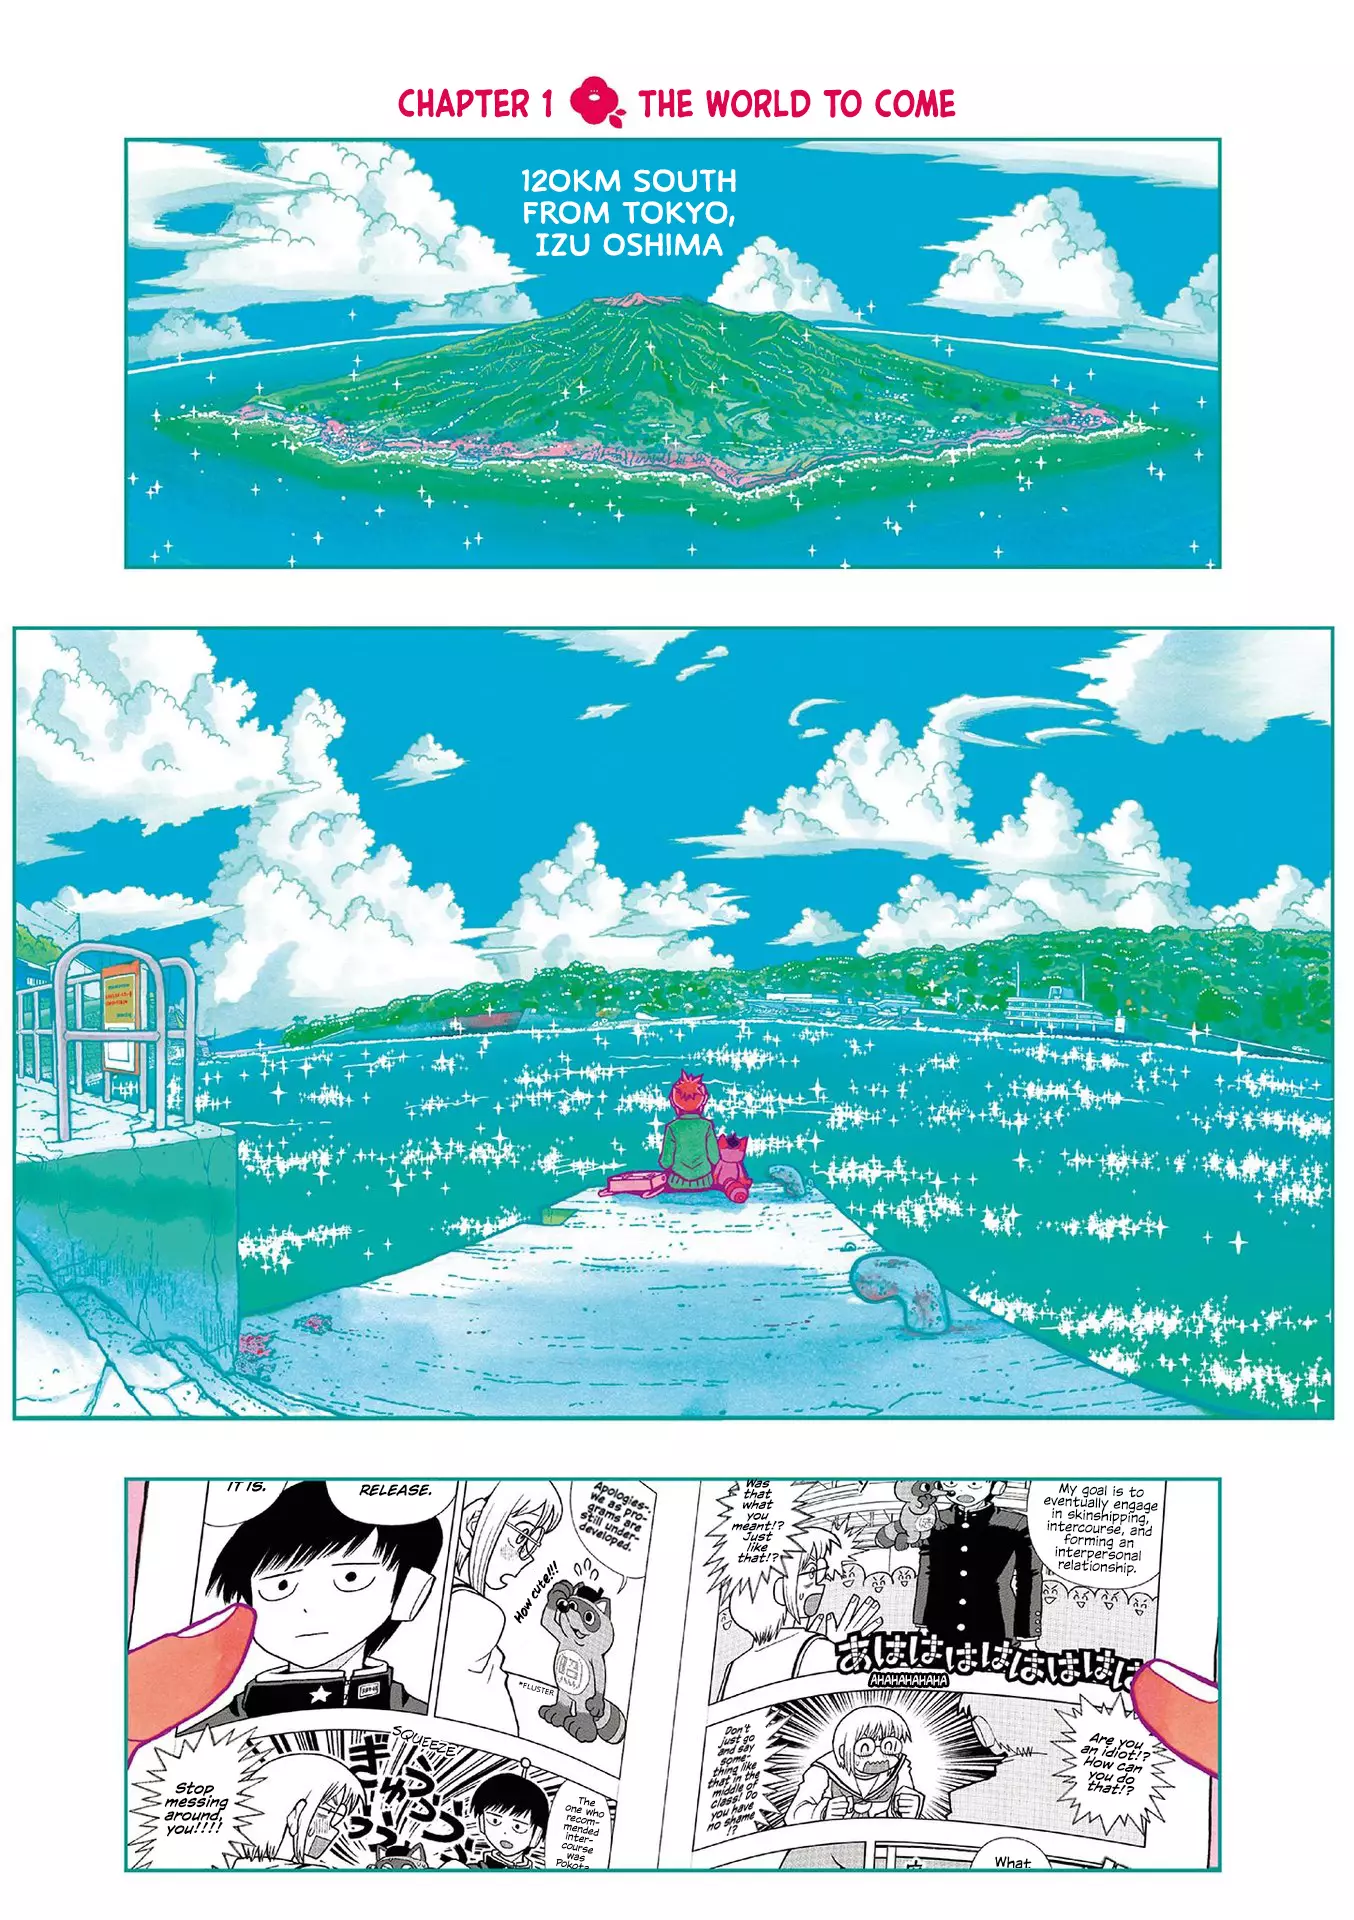 Kore Kaite Shine - 1 page 5-7dec45ae